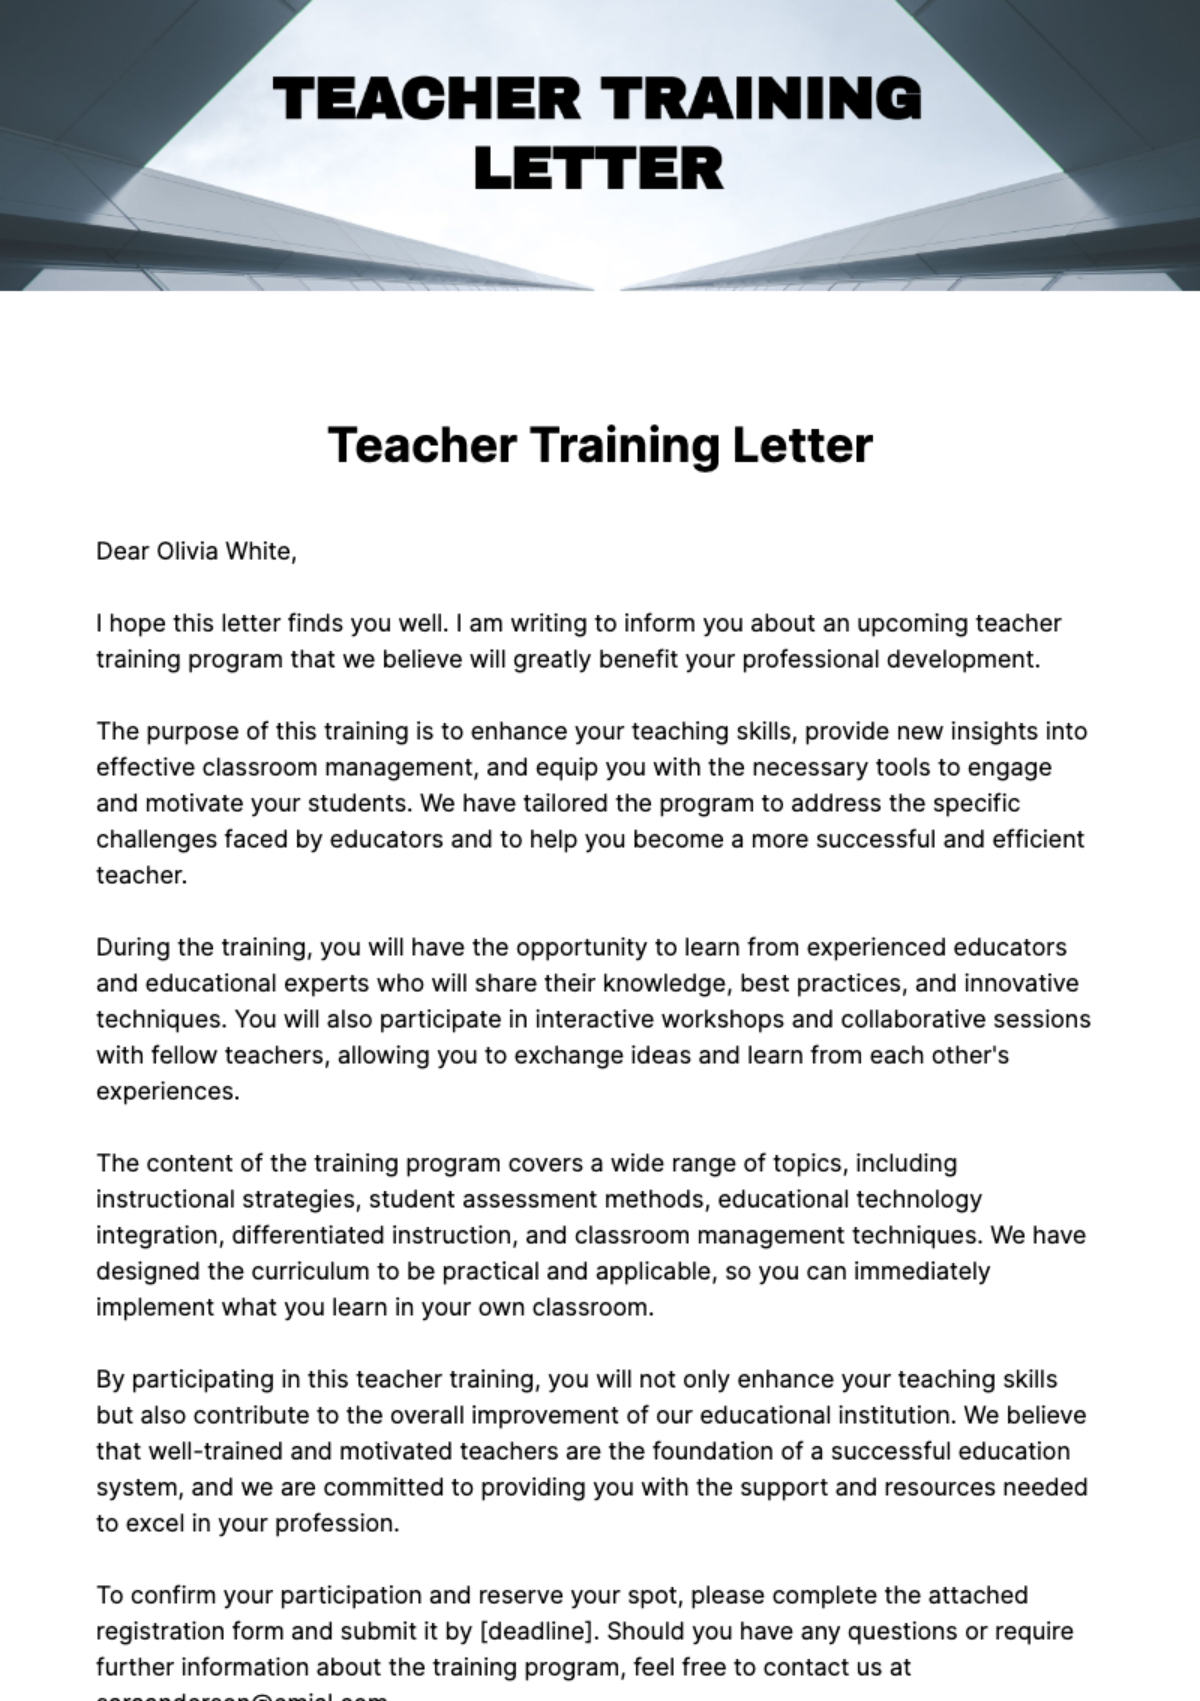 Free Teacher Training Letter Template